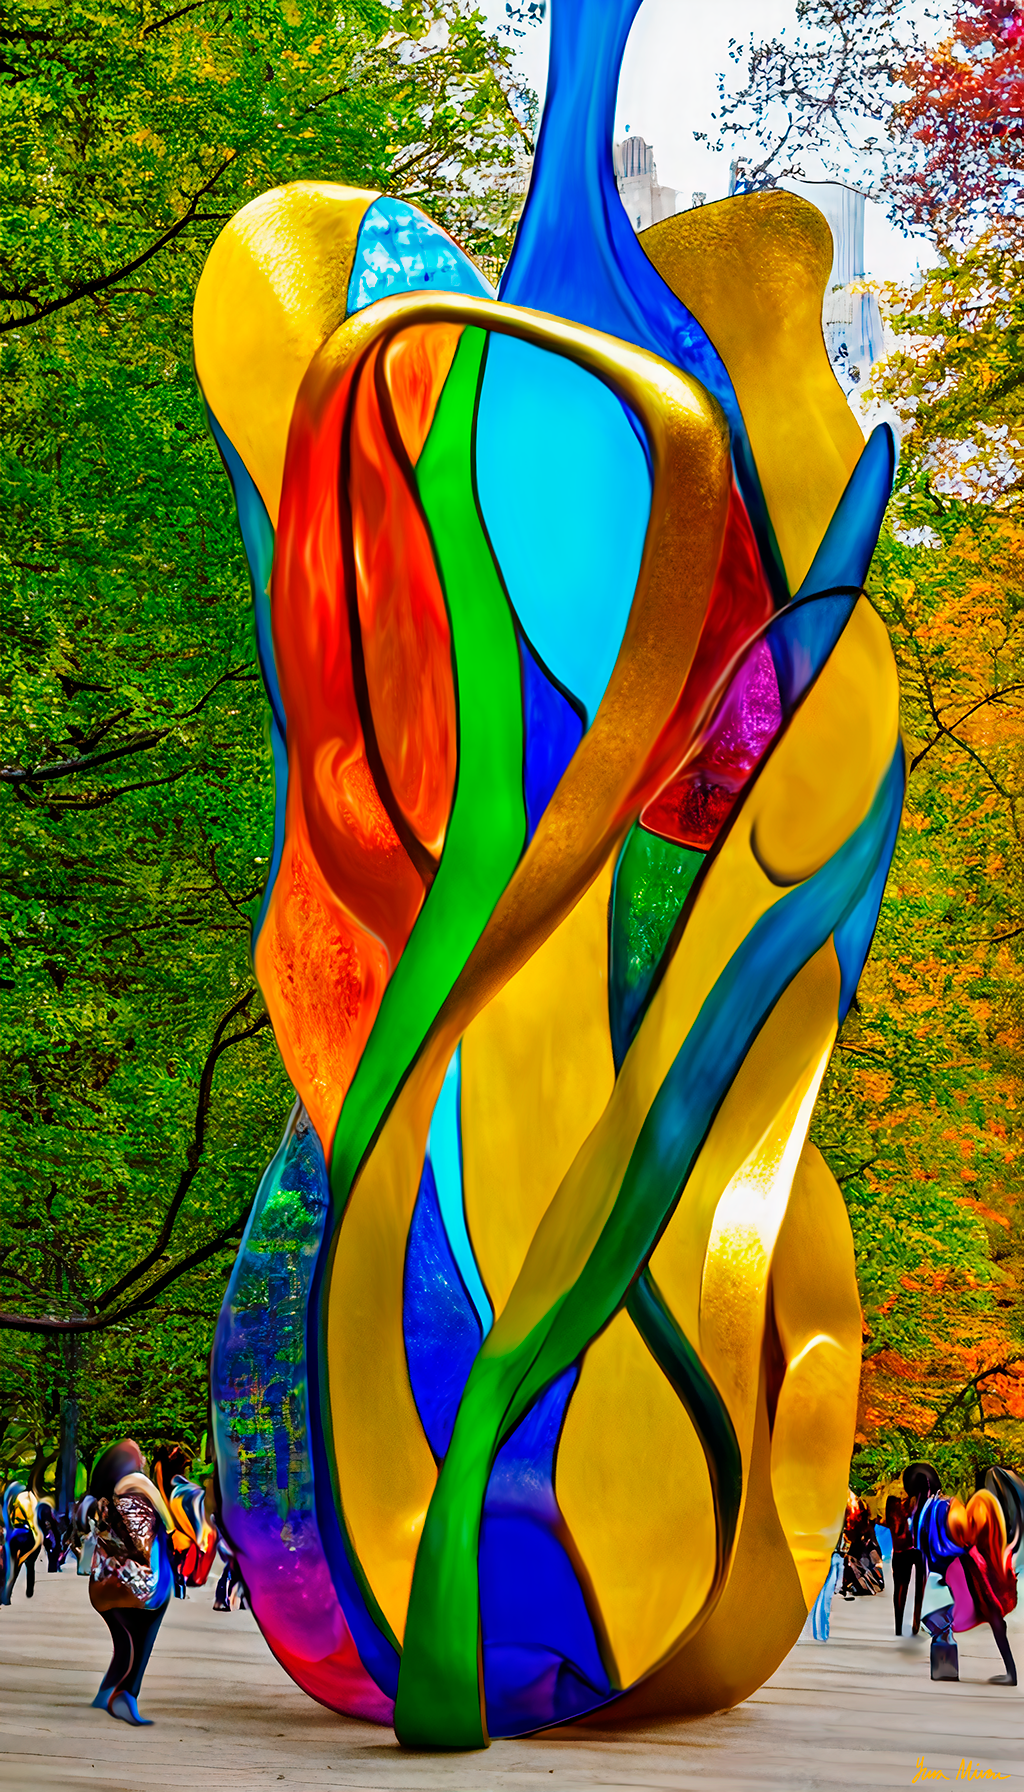 NYC Glass Art #2 by Yura Miron